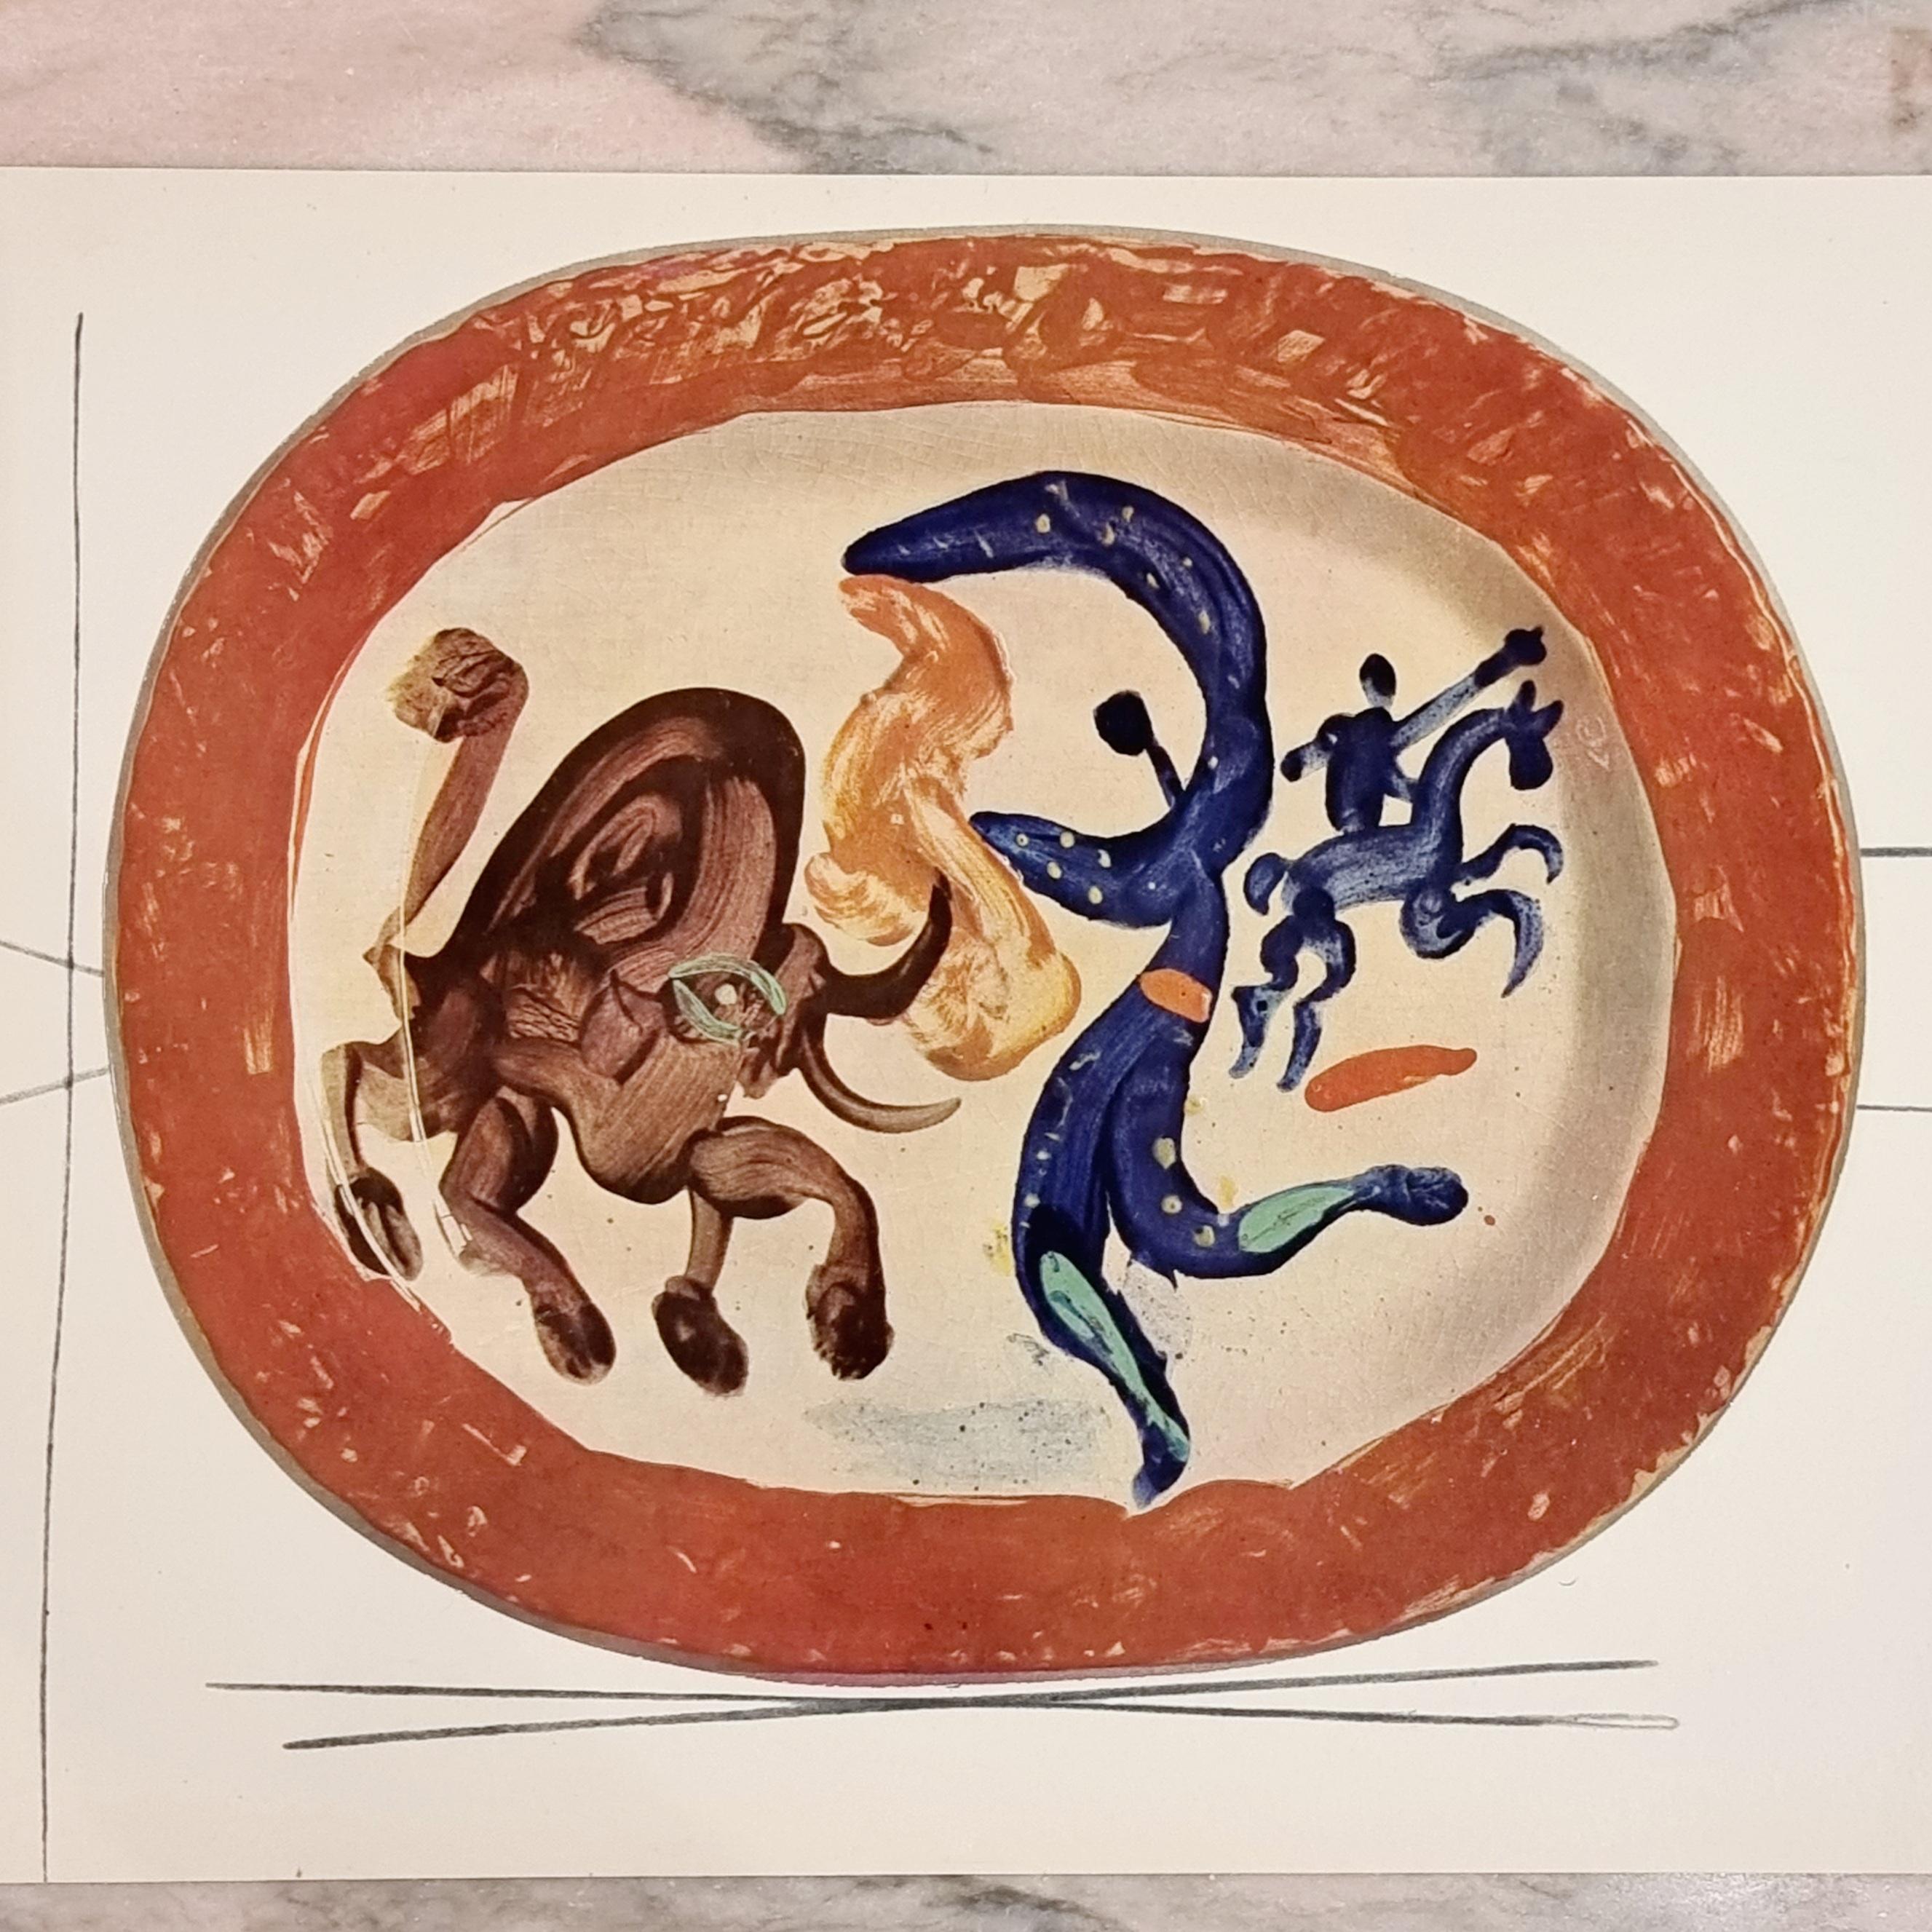 Swiss Albert Skira Print of Corrida de Toros Ceramic Plate, 